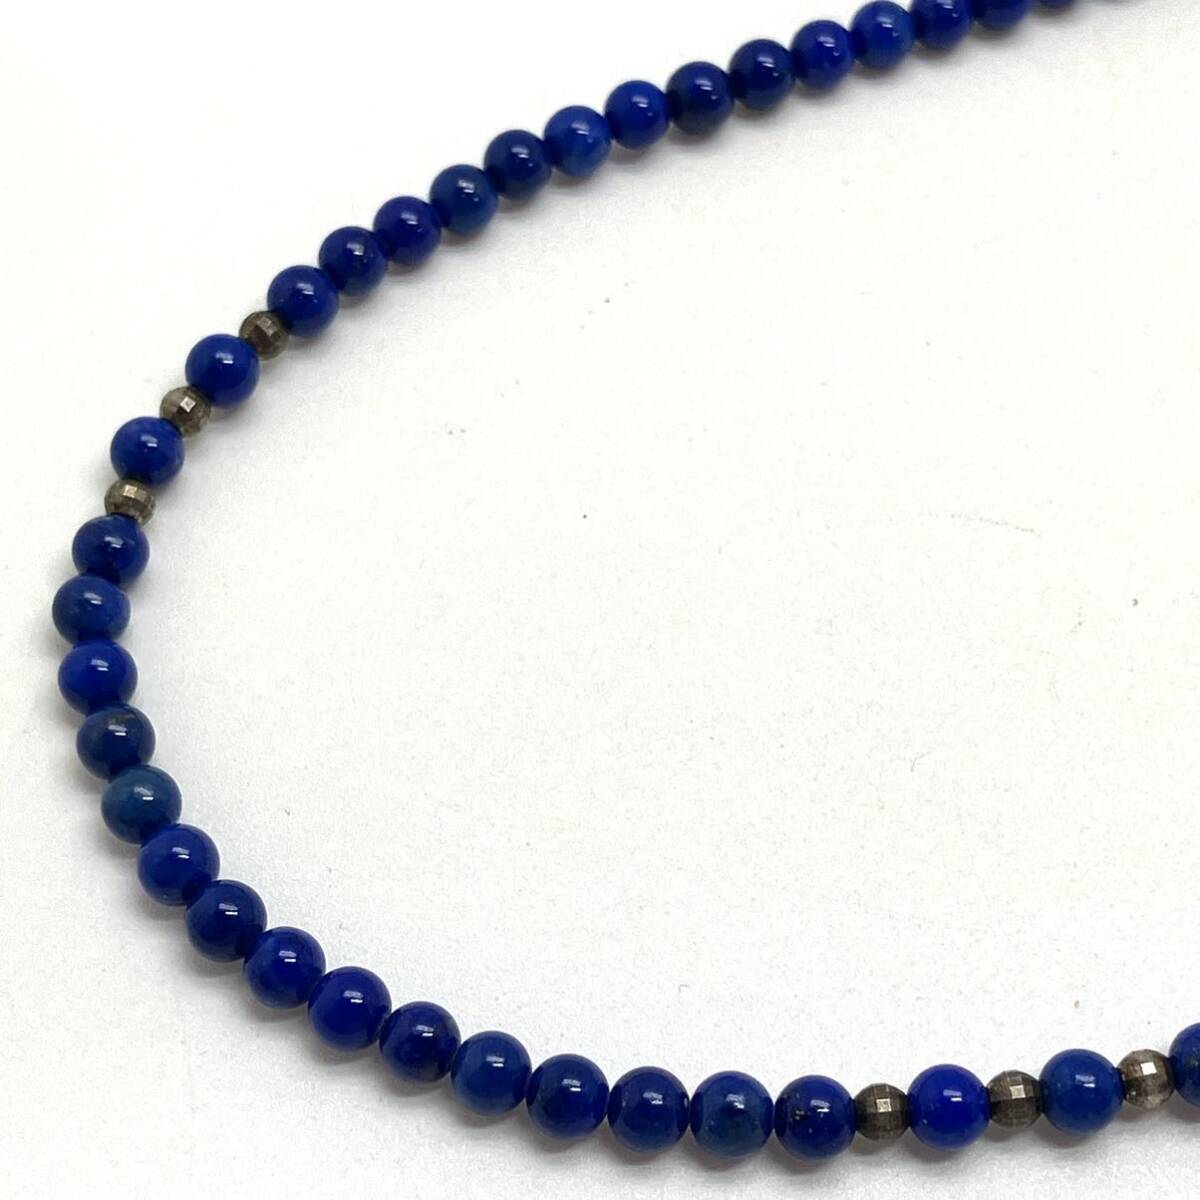 ［ラピスラズリネックレス5点おまとめ］m 重量約113.0g lapis lazuli 瑠璃 necklace accessory ペンダント pendant jewelry silver DA0 _画像3